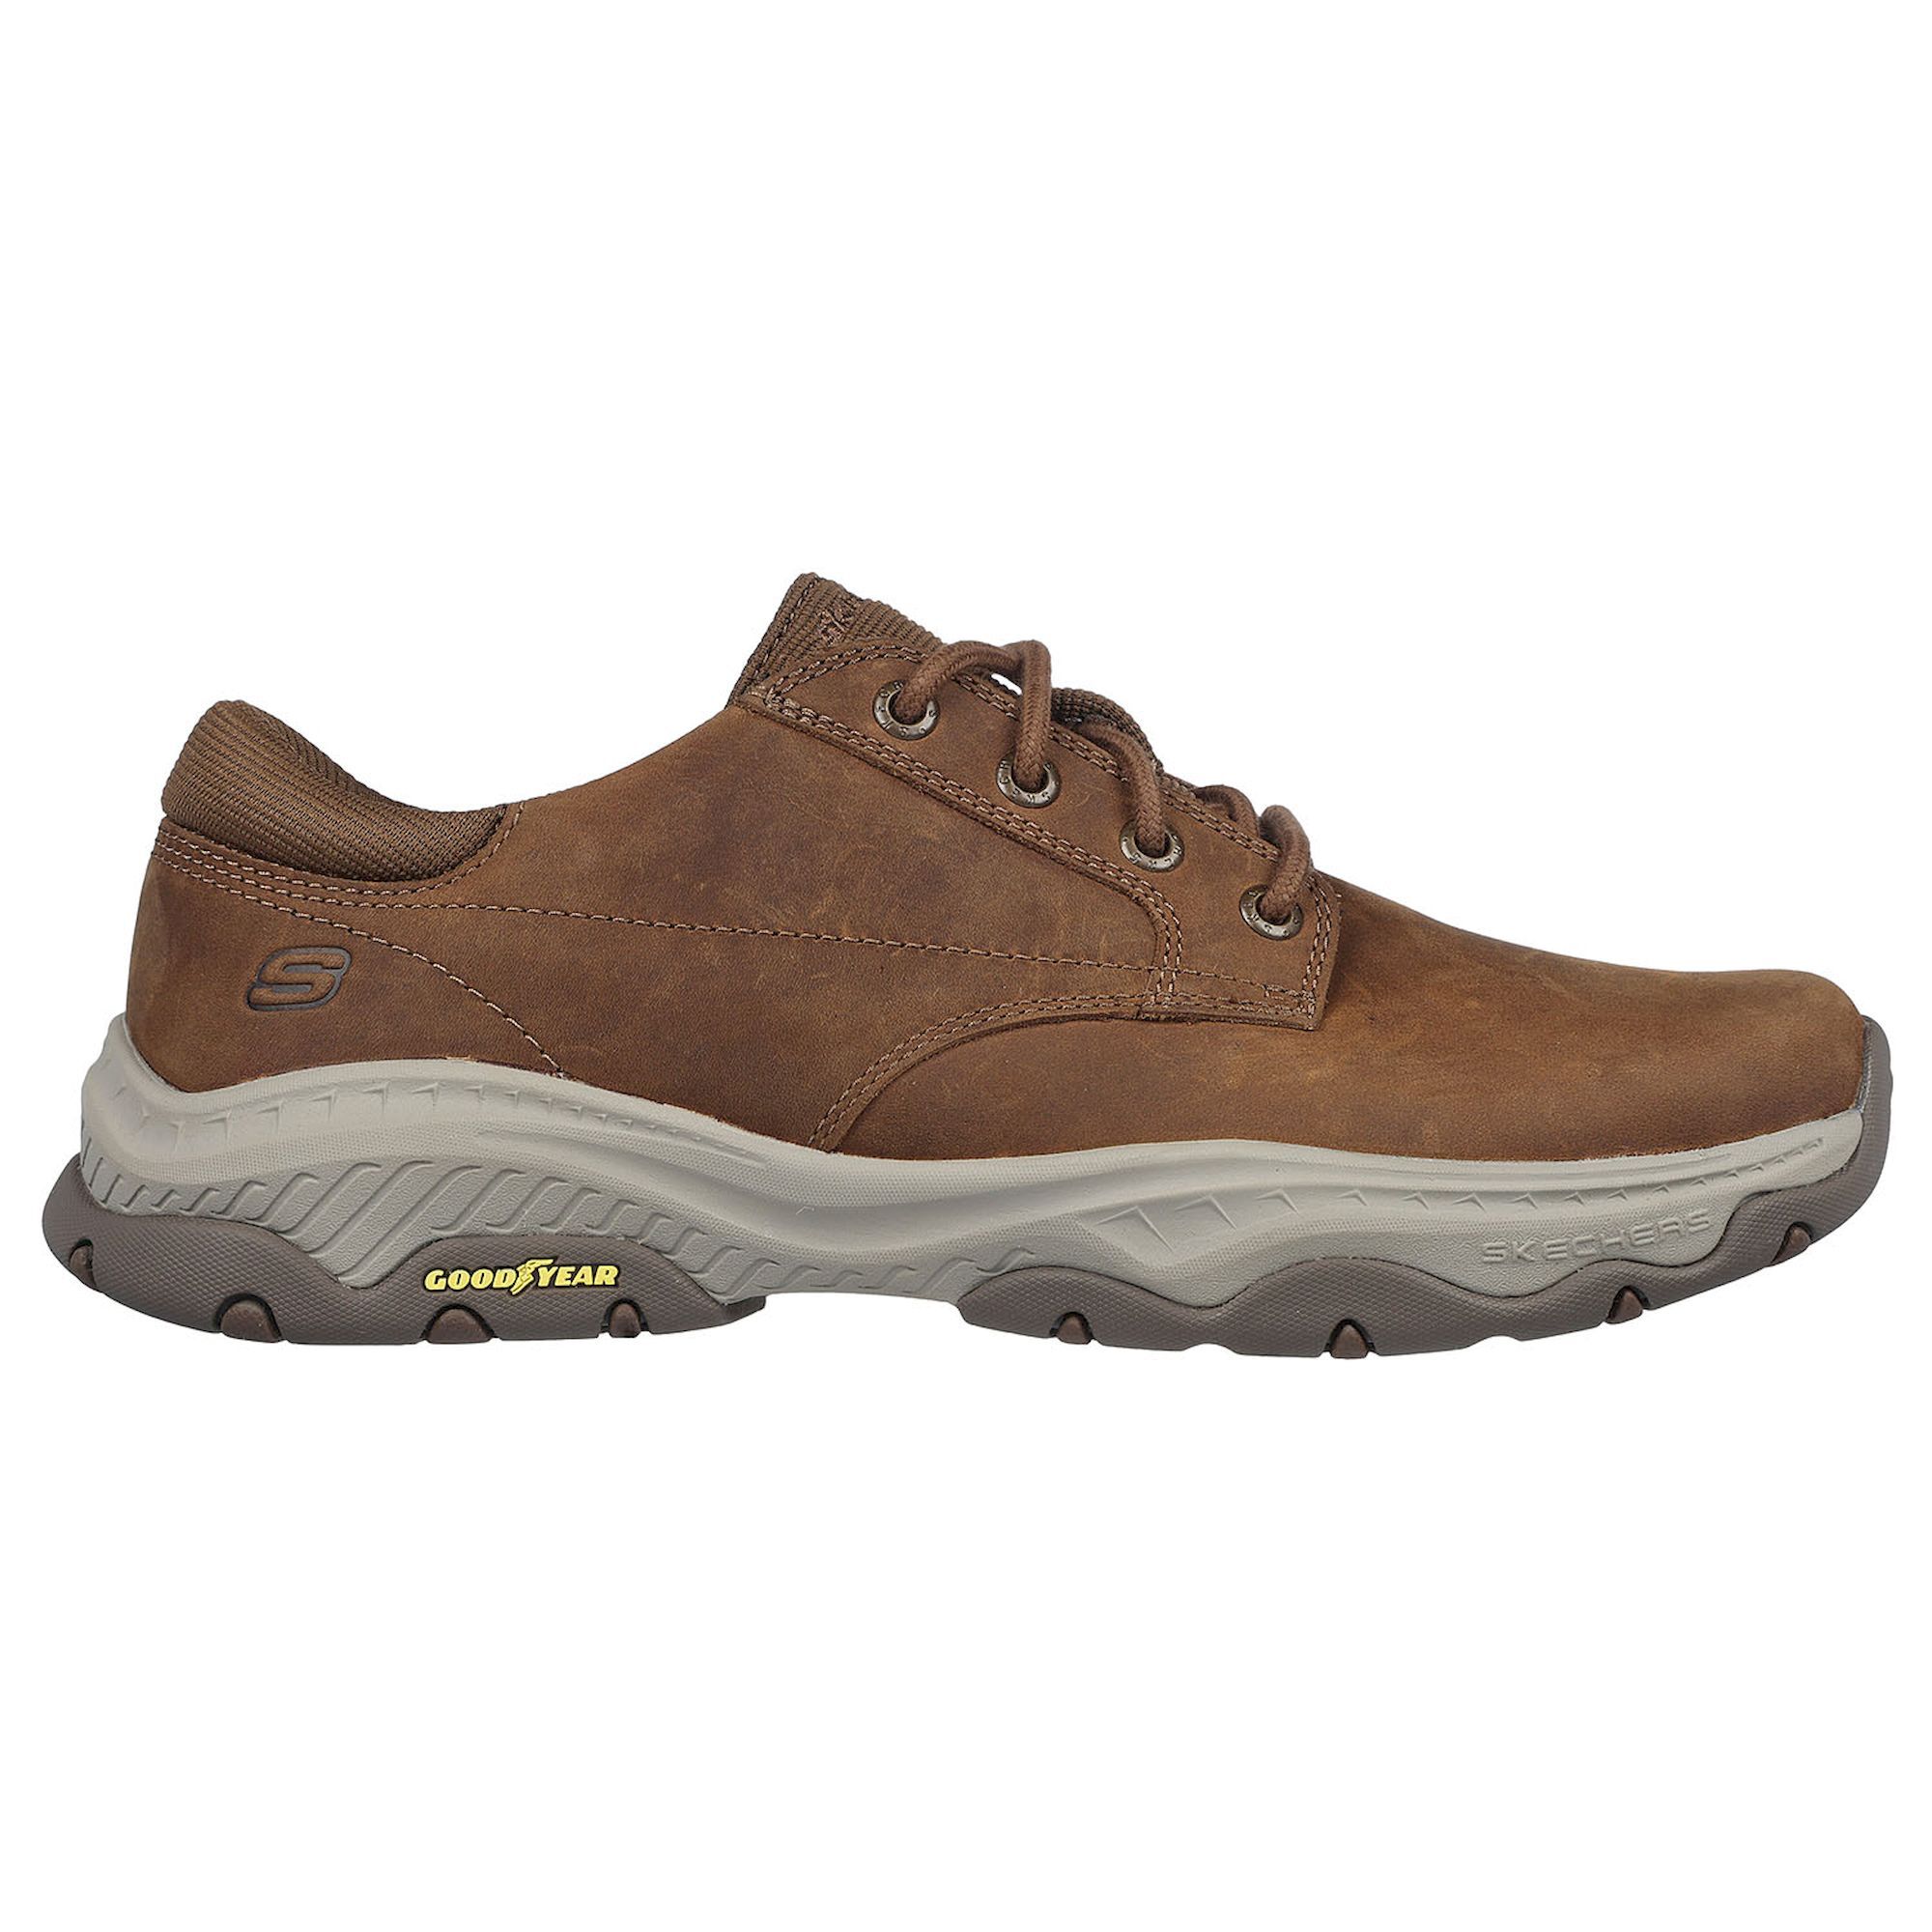 Skechers Craster - Fenzo - Lifestyle shoes - Men's | Hardloop